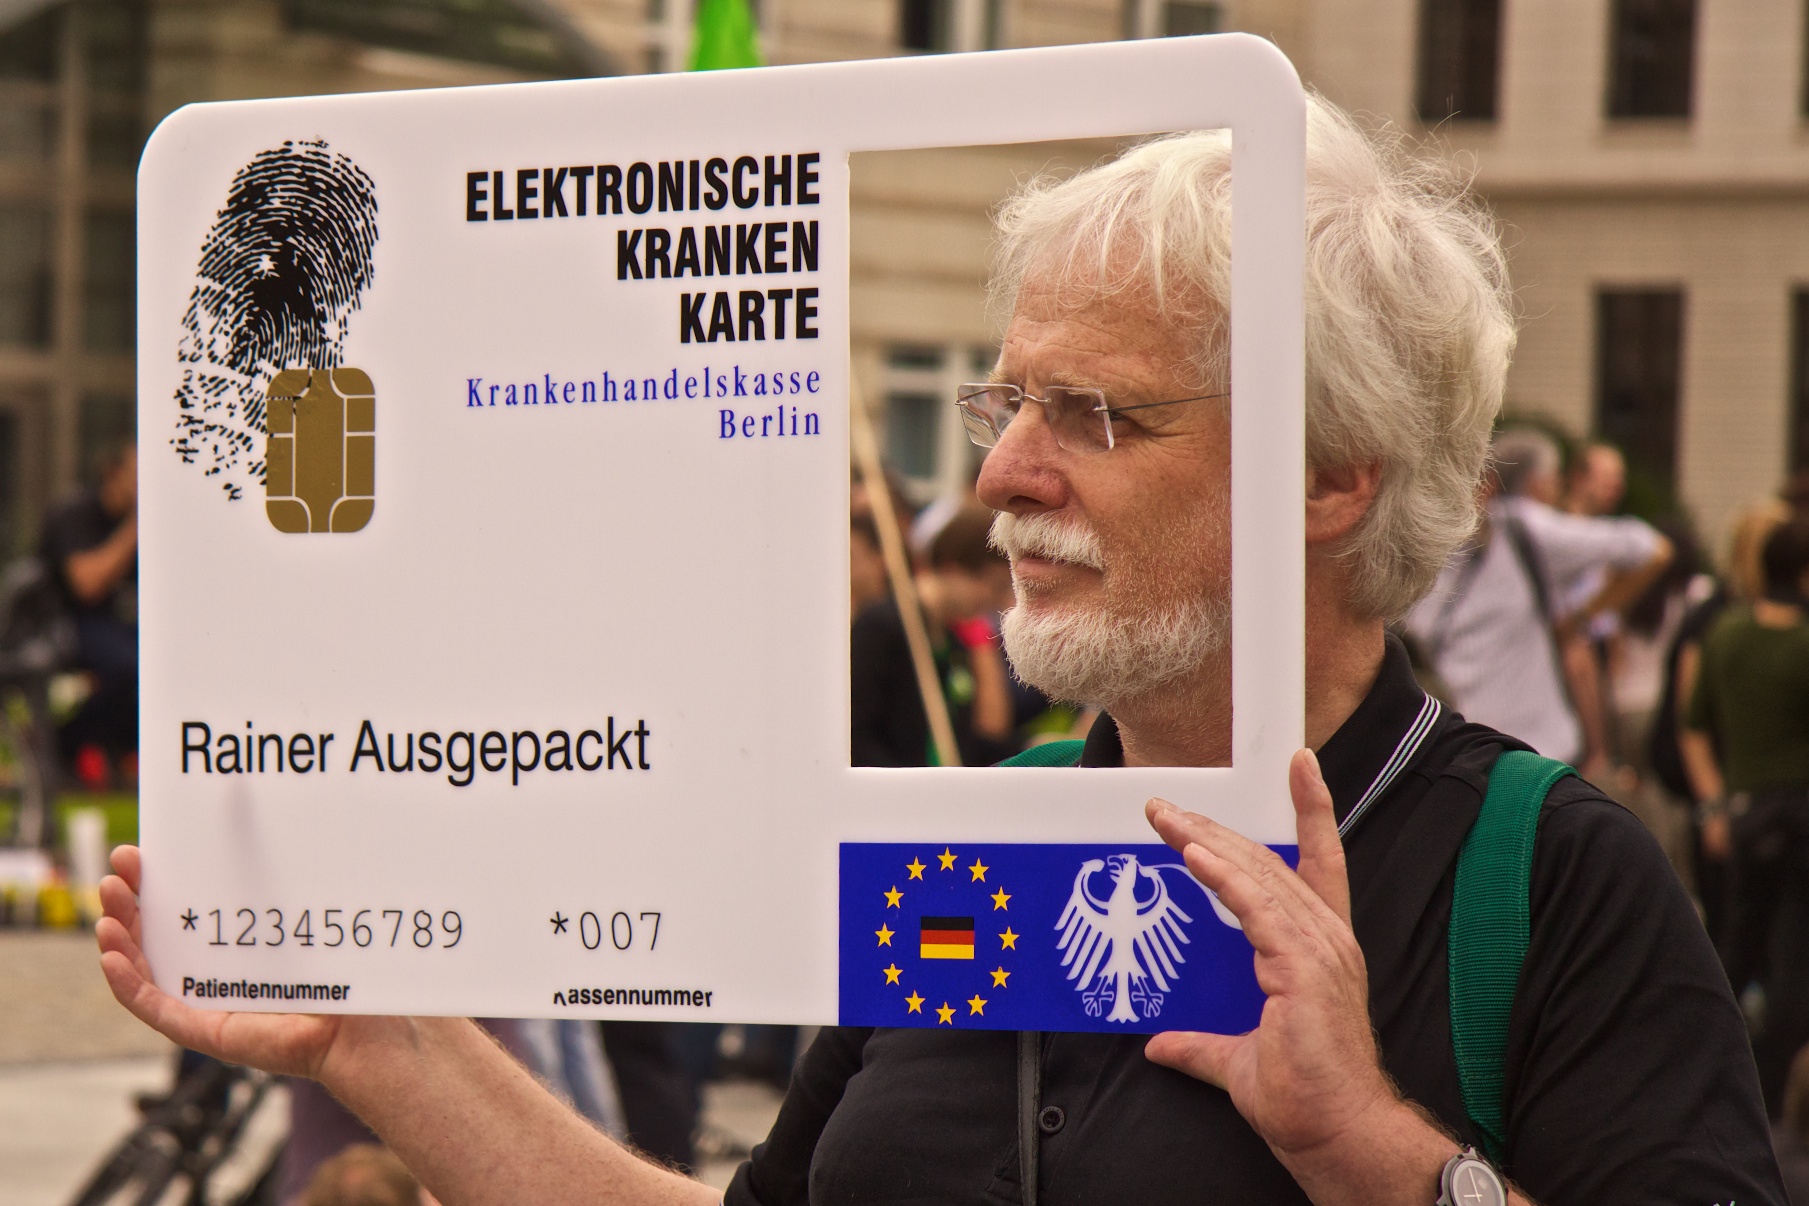 Elektronische Krankenkarte von Rainer Ausgepackt (Bild von der Demonstration Freiheit statt Angst 2011, CC-BY 2.0 opyh))